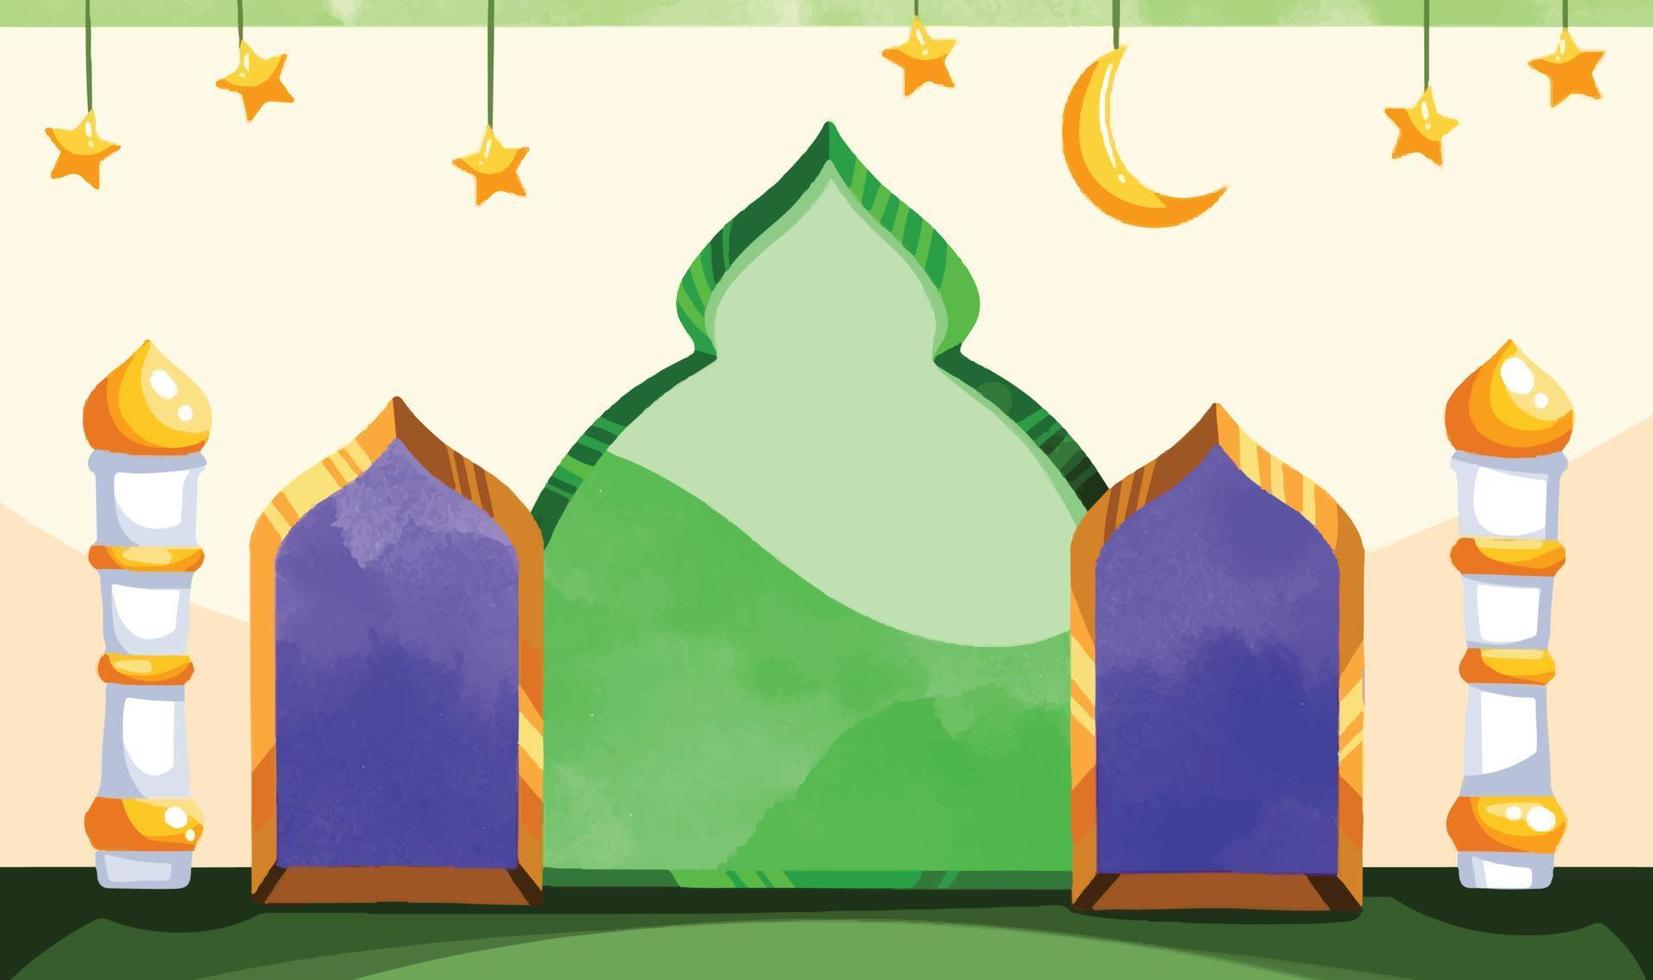 Ramadhan kareem achtergrond voor eid mubarak behang ontwerp. vector illustratie voor Moslim religie idul fitri, horizontaal banier sjabloon met sterren en maan decoratie. geel en groen gekleurd.